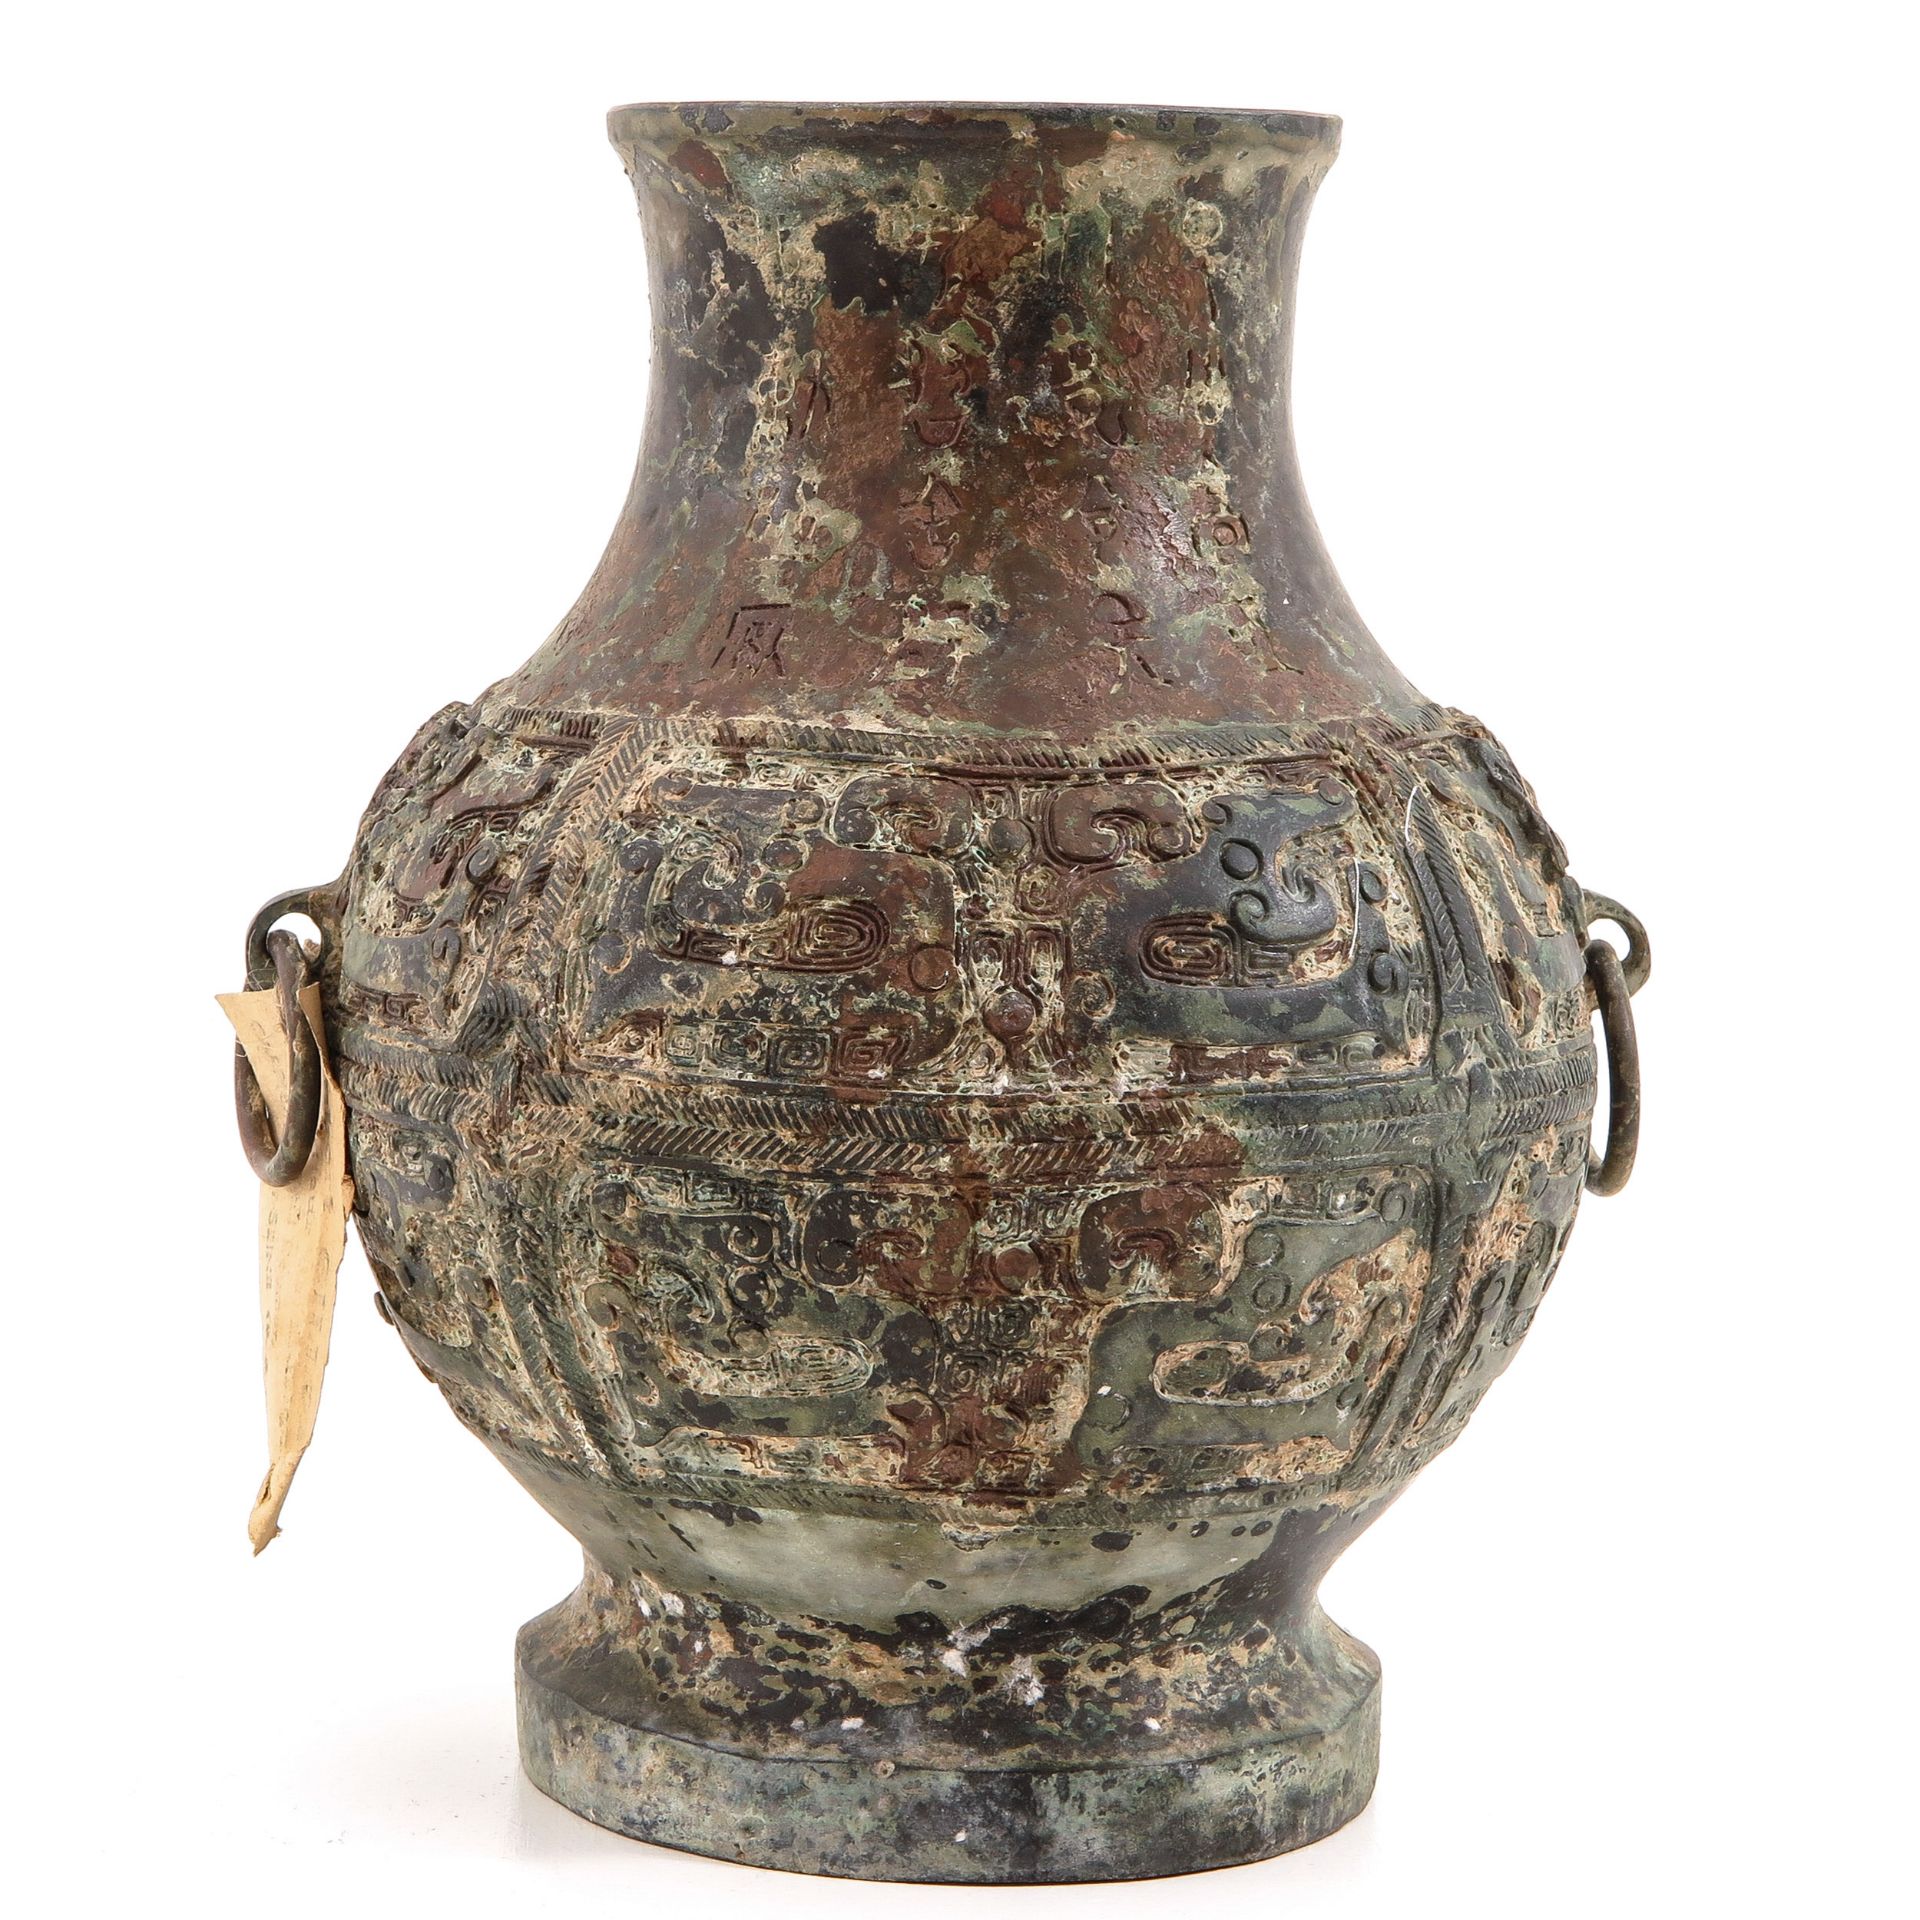 A Metal Altar Vase - Image 3 of 9